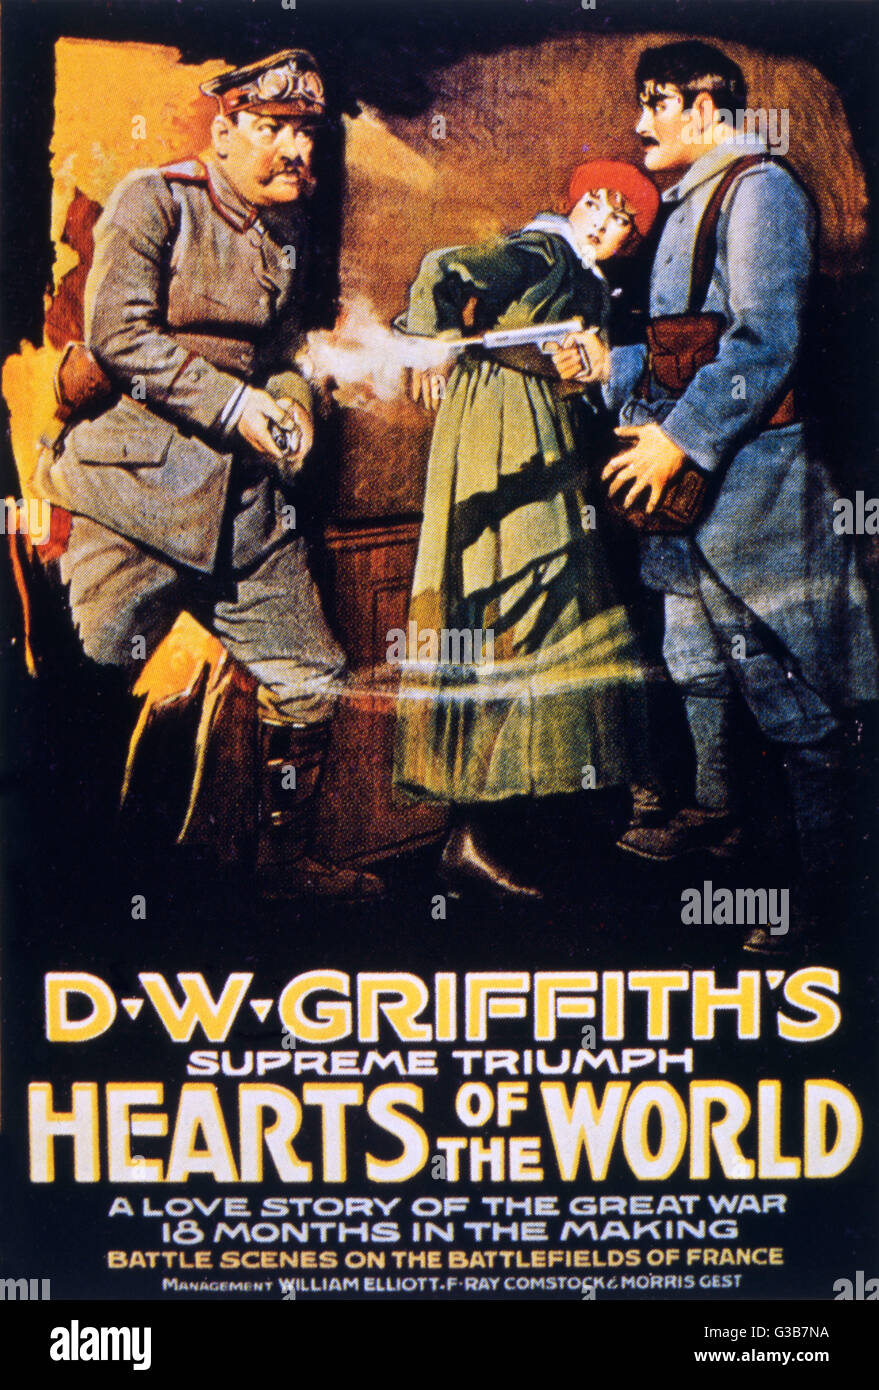 Plakat für "HEARTS OF THE WORLD", Regie: D W Griffith, Darsteller der zwei Gishes und darunter Stroheim und Coward in einen Weltkrieg Propaganda Schmachtfetzen.     Datum: 1918 Stockfoto